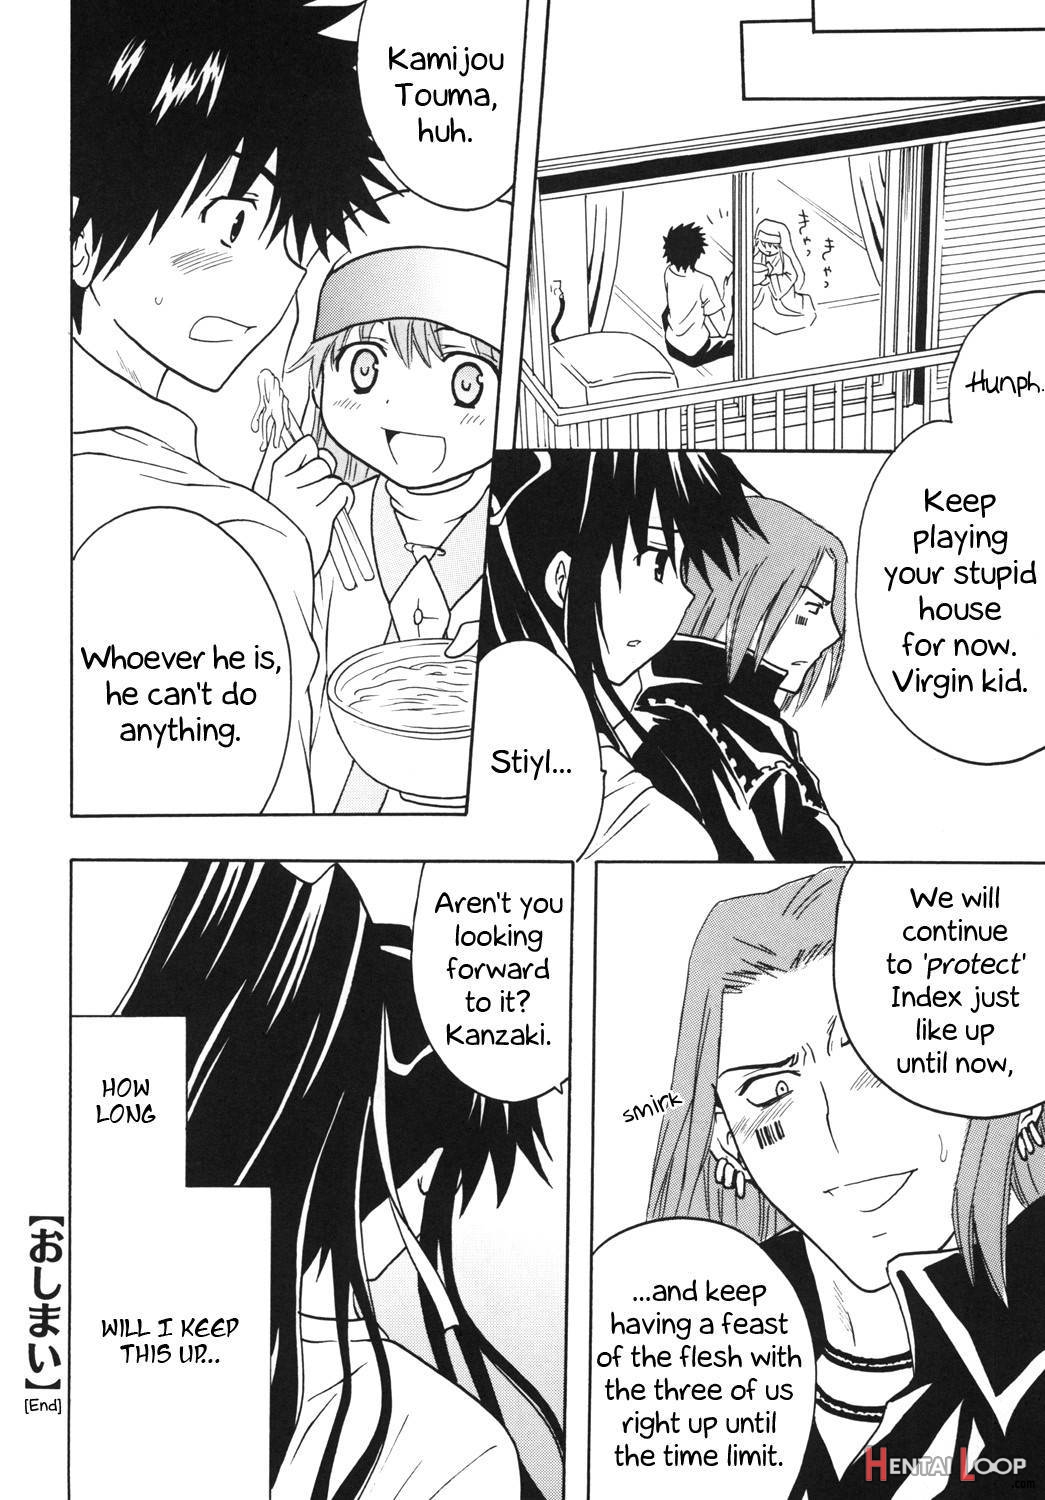 Toaru Otaku no Index #1 page 45